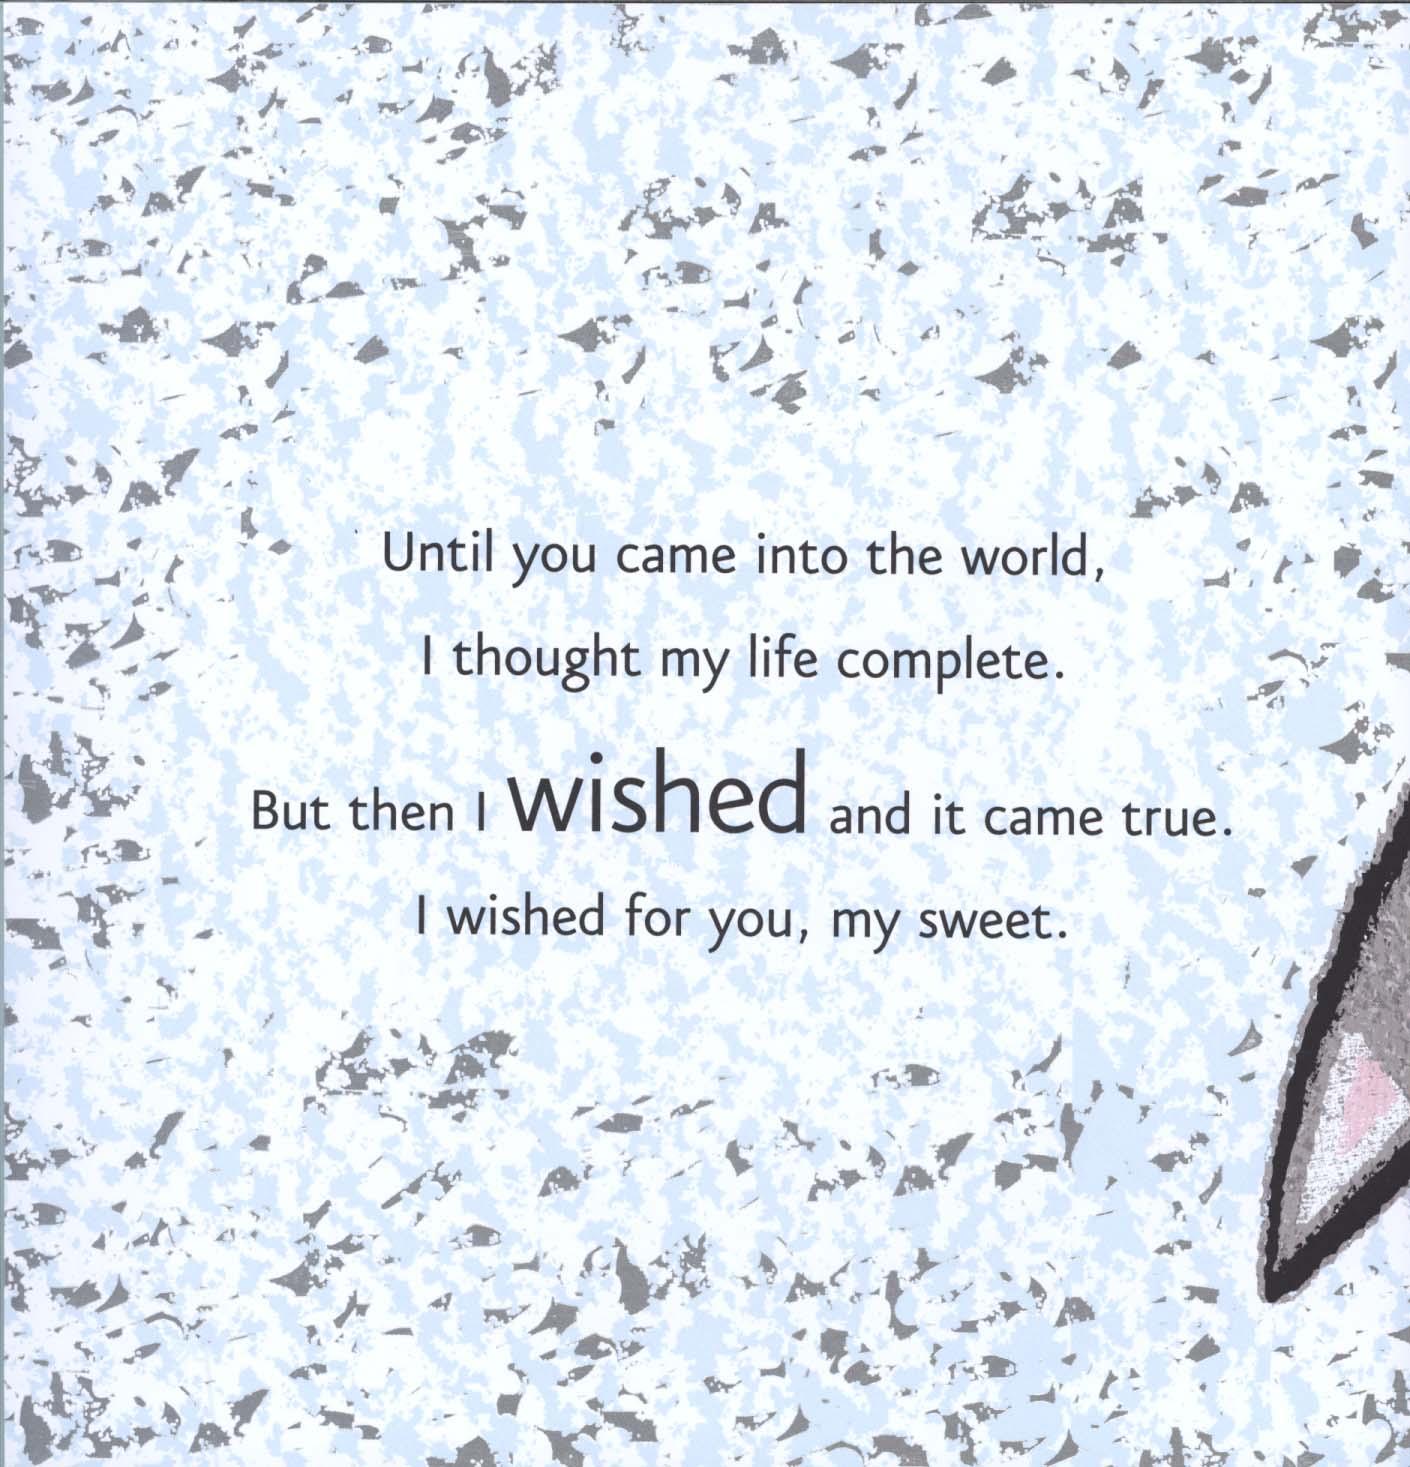 Wish...